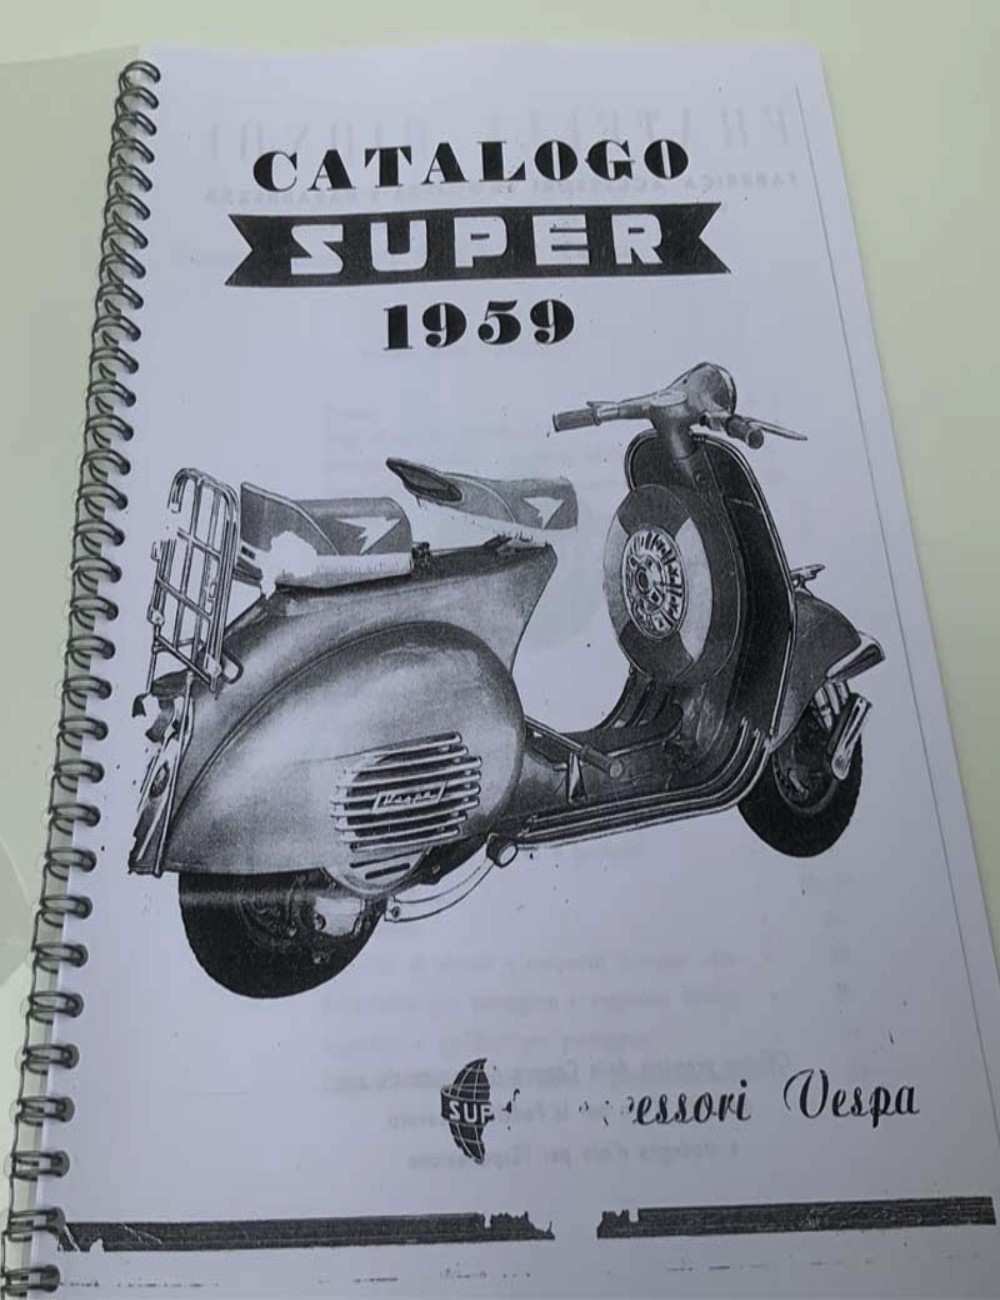 Copia catalogo accessori Vespa super 1959